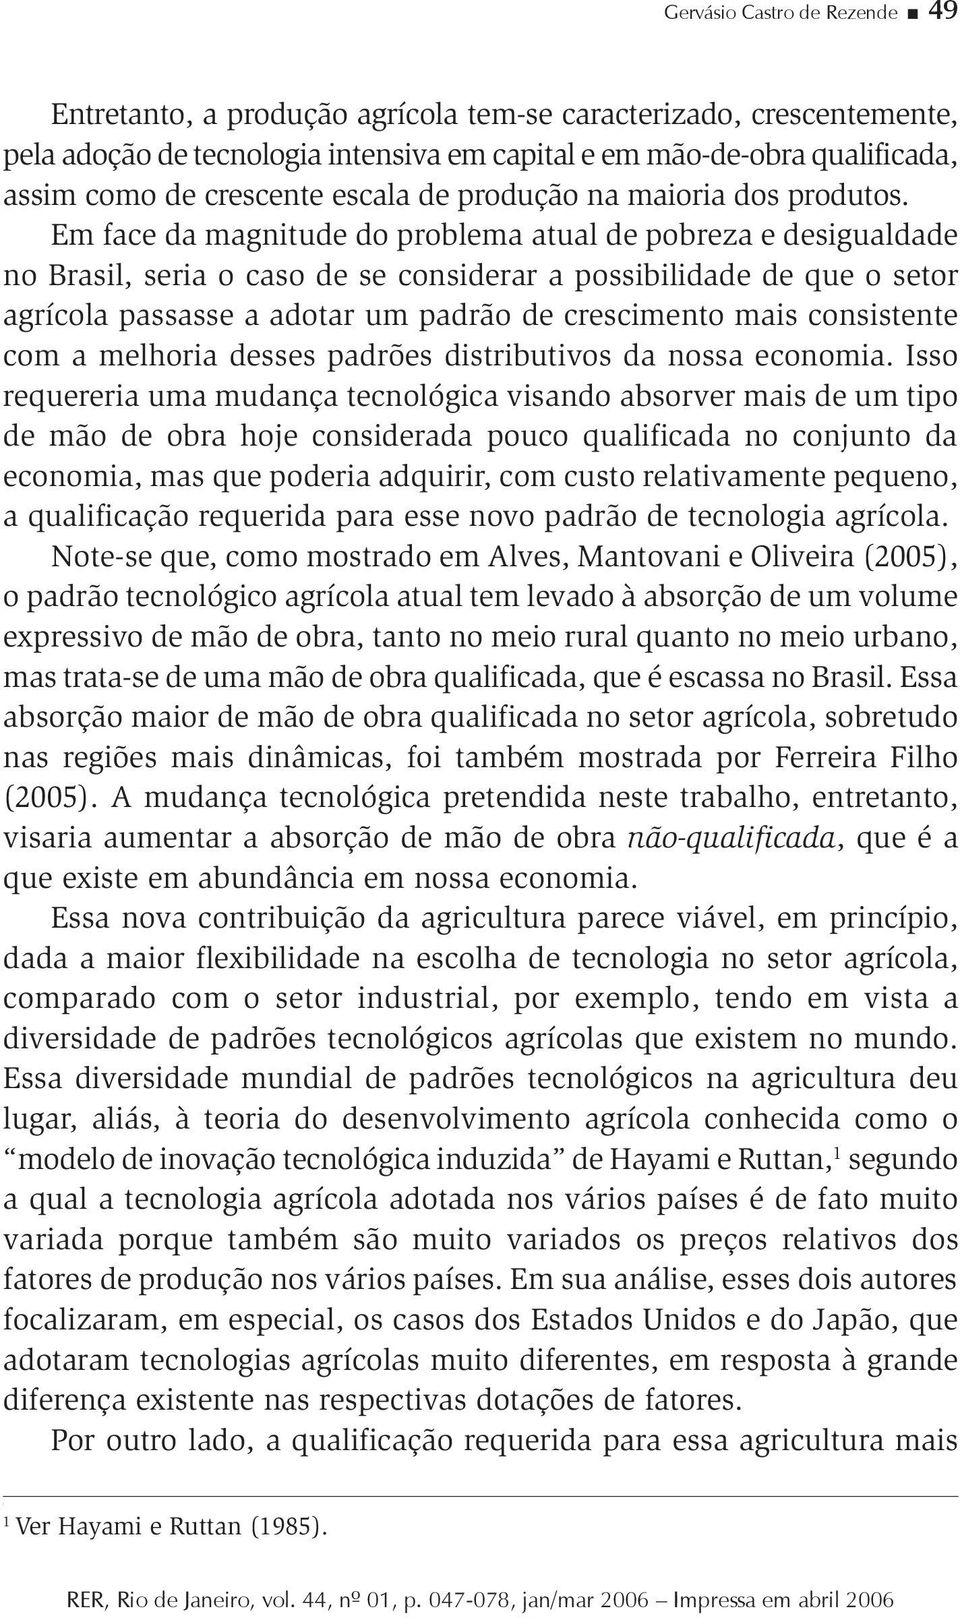 Em face da magnitude do problema atual de pobreza e desigualdade no Brasil, seria o caso de se considerar a possibilidade de que o setor agrícola passasse a adotar um padrão de crescimento mais